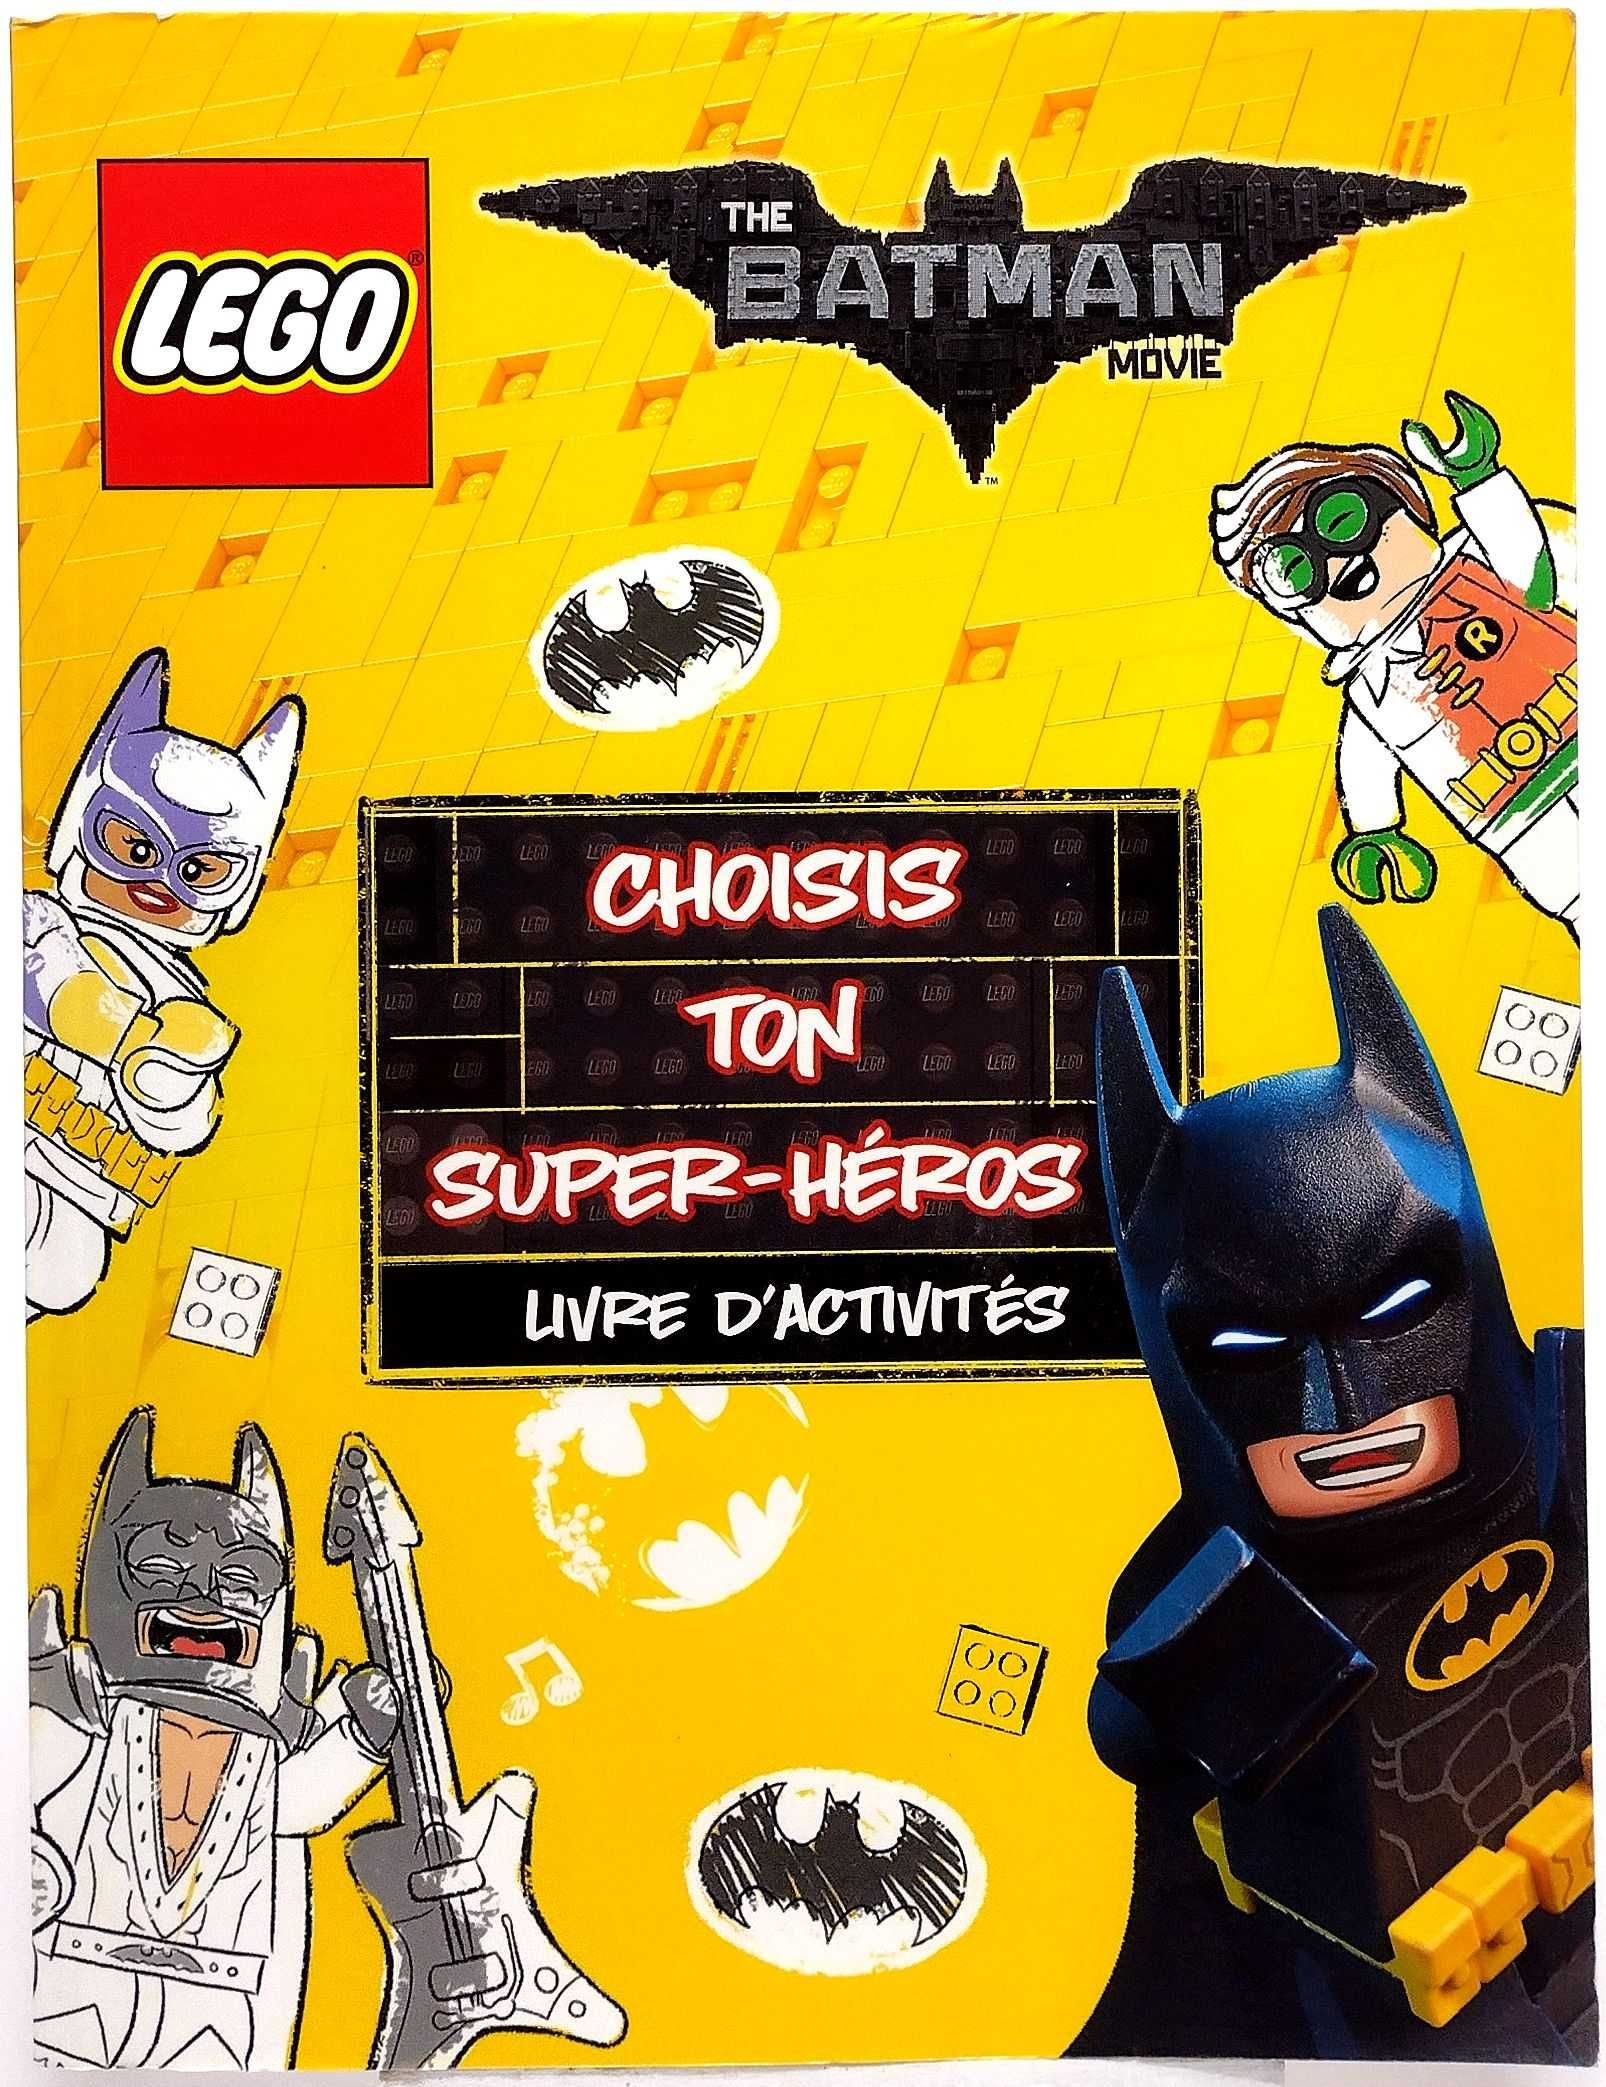 LEGO Batman movie Choisis ton super heros: Livre D